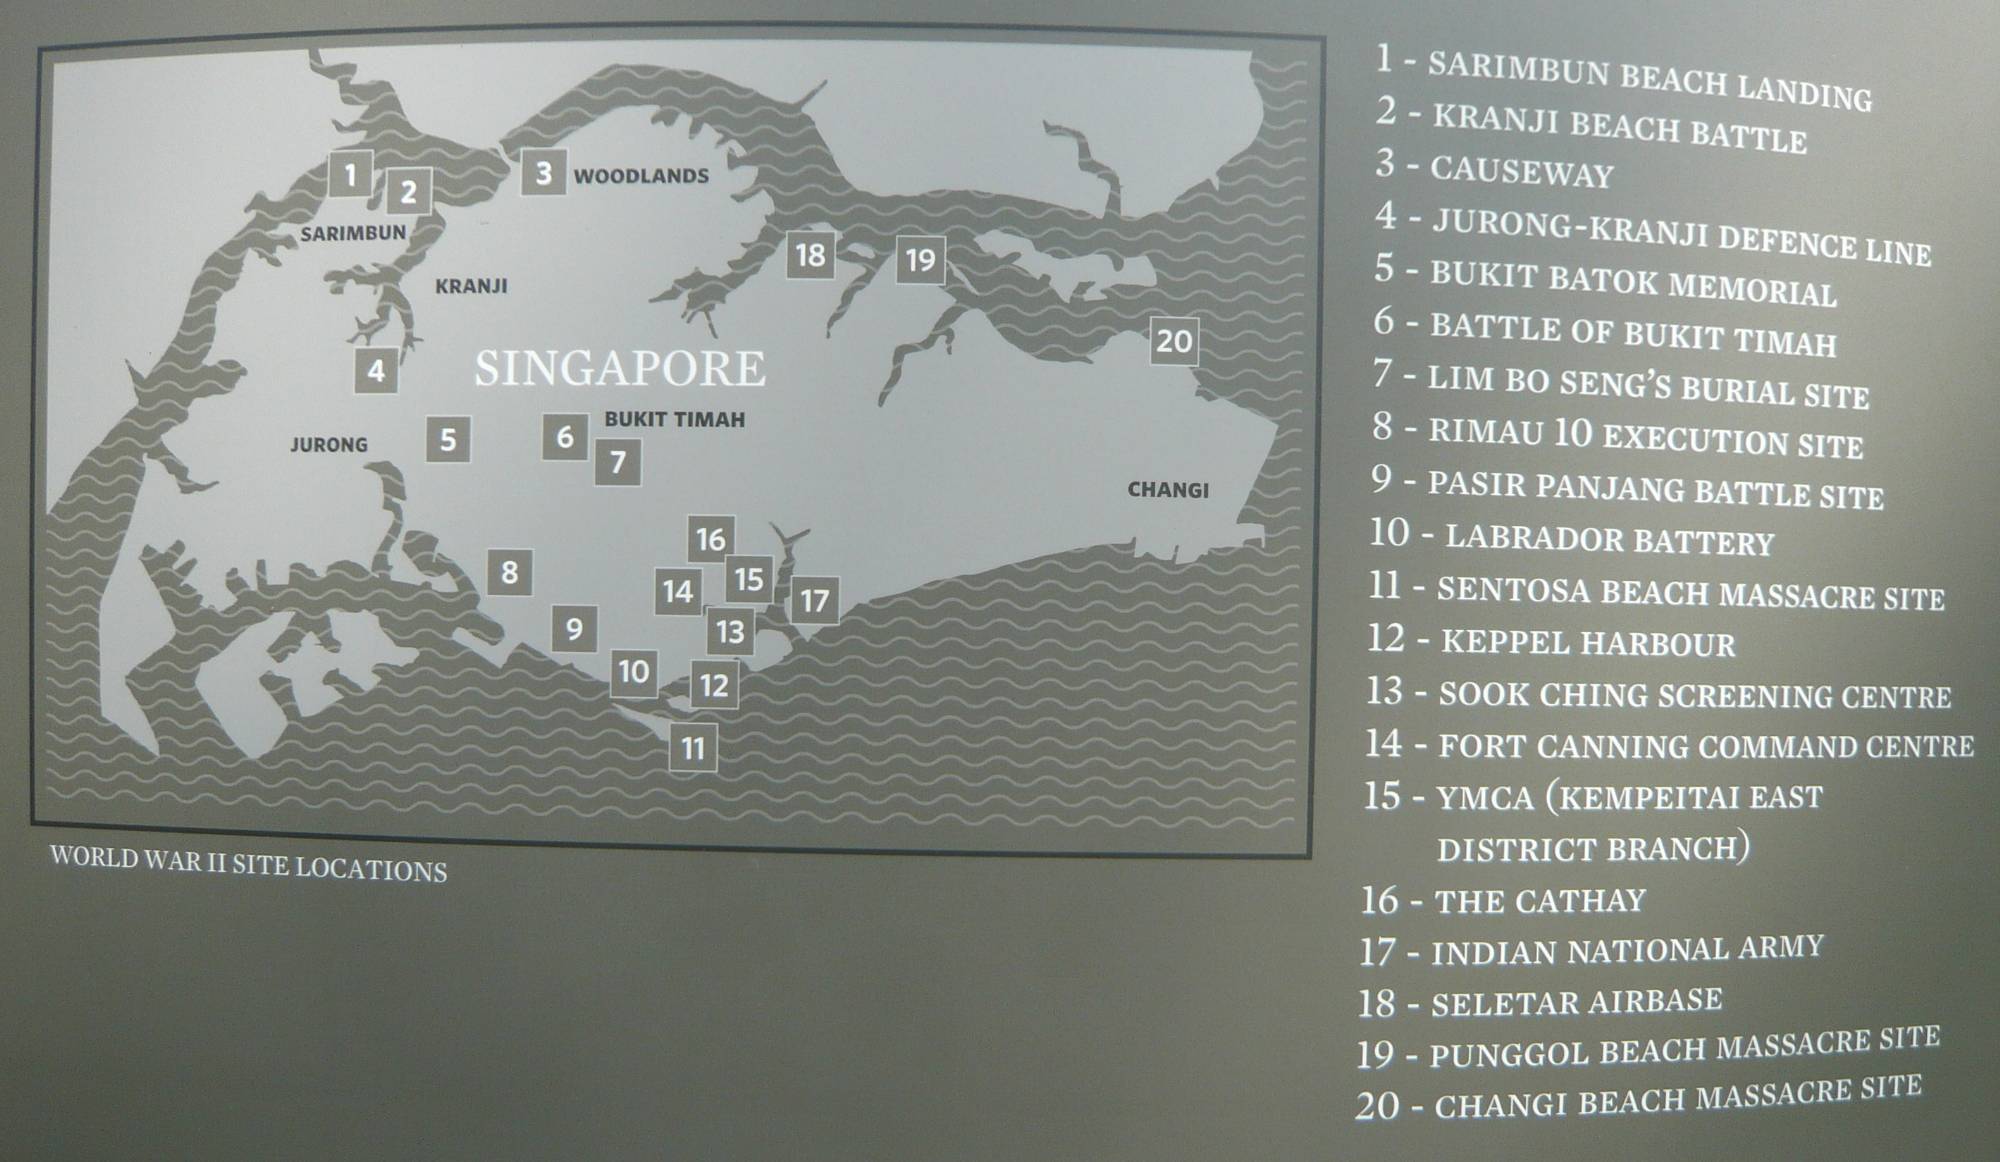 Go Go キョロちゃん Go Go Kyoro Chan シンガポール戦跡記念碑 4 ジュロン クランジ防御線 Jurong Kranji Defence Line シンガポール戦跡記念碑 全基 めぐり シンガポール シンガポール